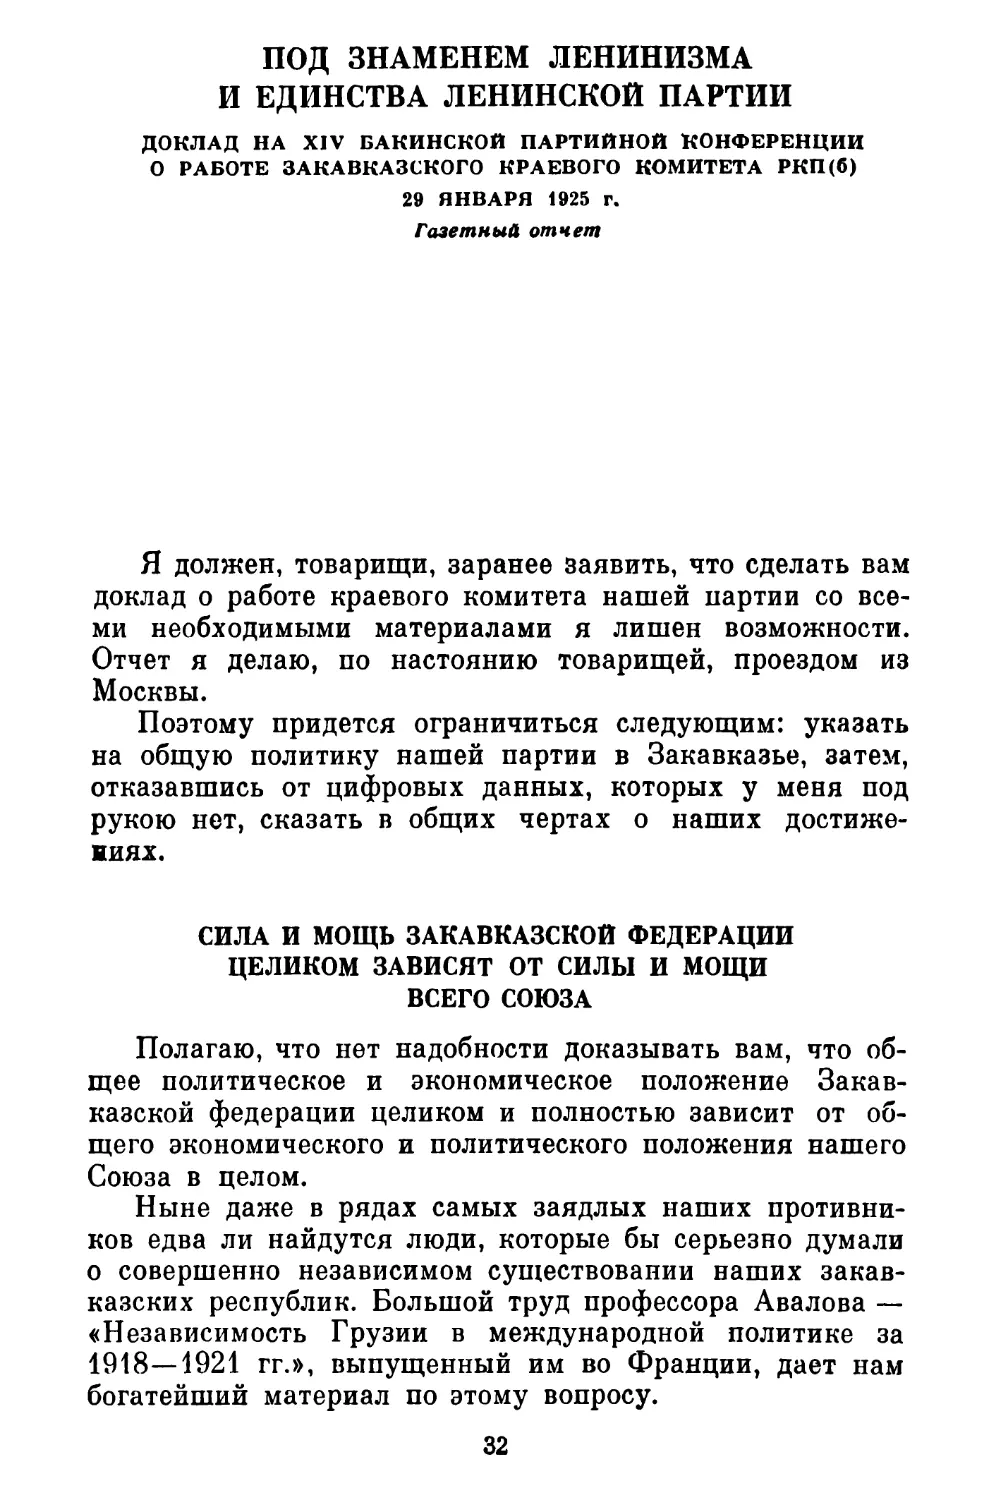 ПОД ЗНАМЕНЕМ ЛЕНИНИЗМА И ЕДИНСТВА ЛЕНИНСКОЙ ПАРТИИ. Доклад на XIV Бакинской партийной конференции 29 января 1925 г. Газетный отчет